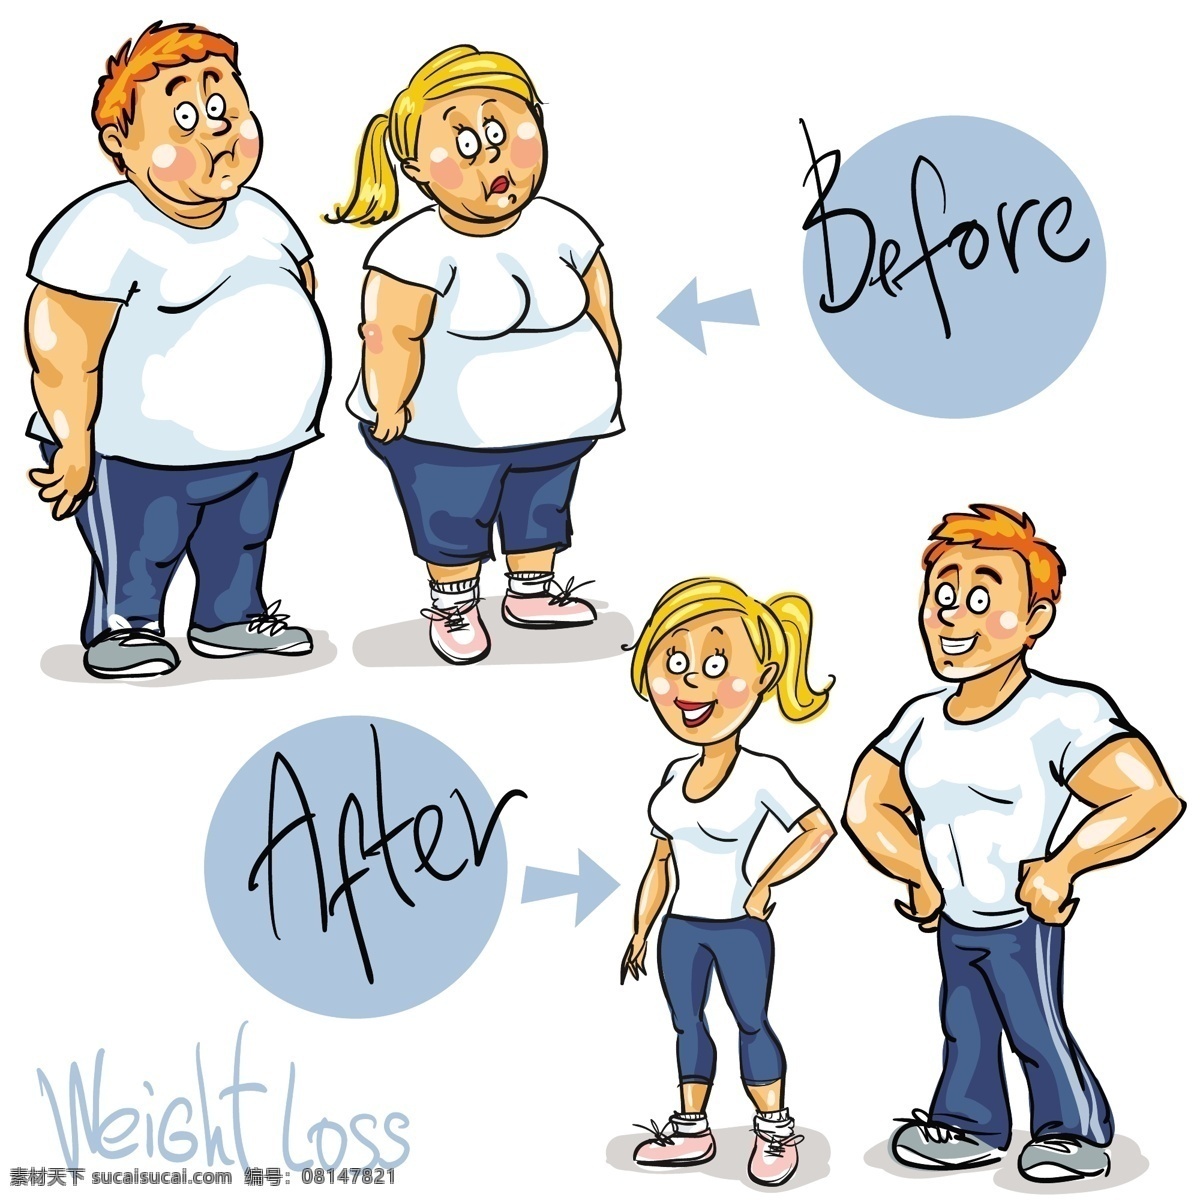 减肥 前后 男女 对比 插画 卡通画 人物 对比插画 情侣 肥胖 日常生活 矢量人物 矢量素材